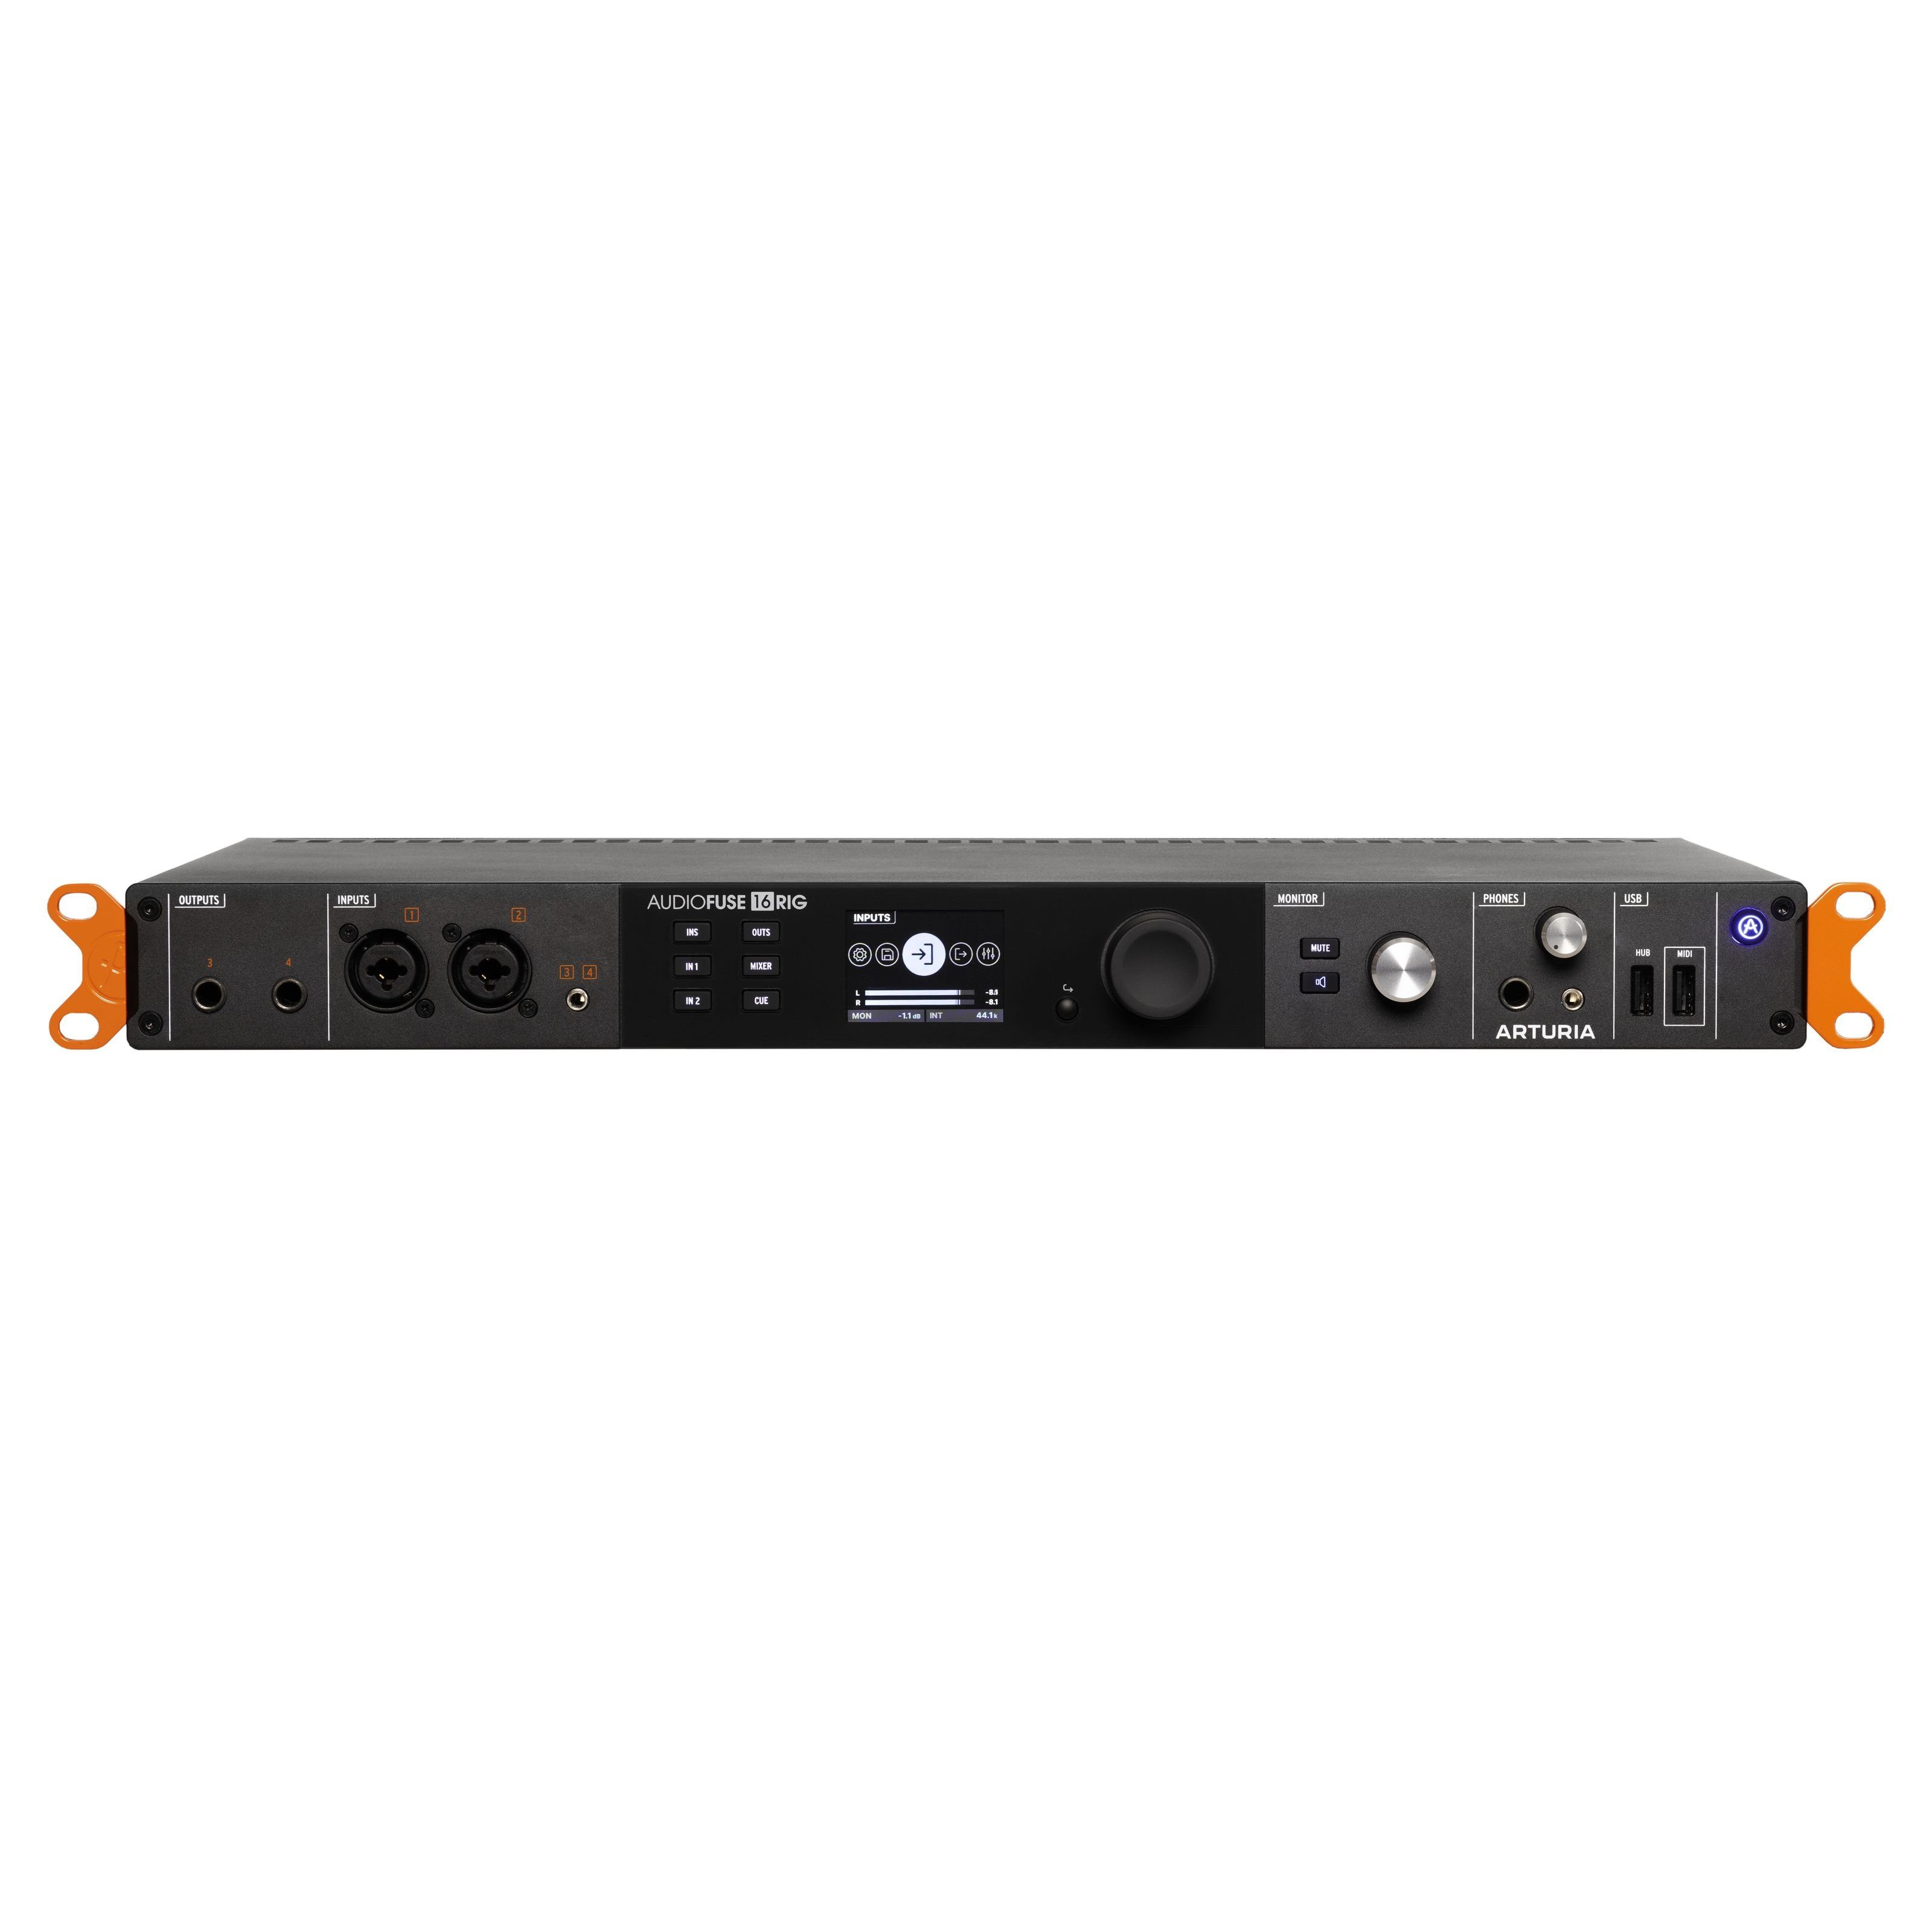 Arturia Digitales Aufnahmegerät (AudioFuse 16Rig USB-C Audio Interface - USB Audio Interface)